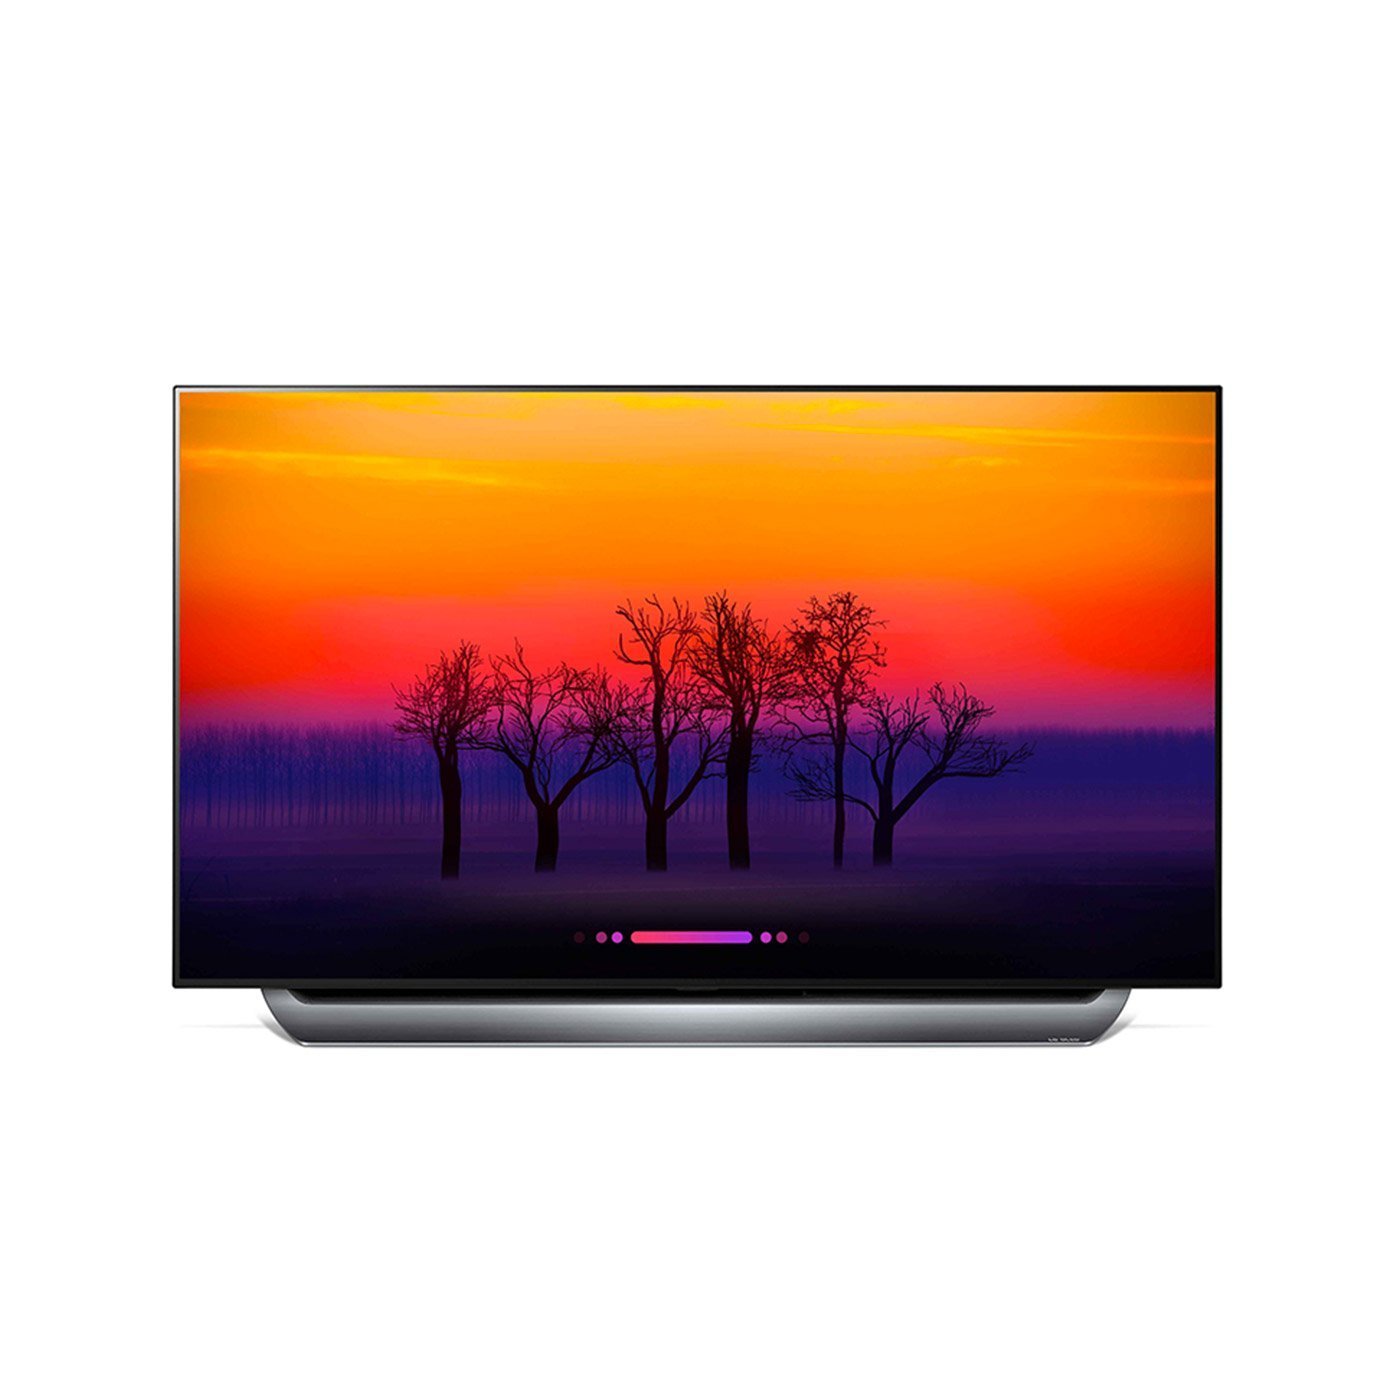 LG OLED65E8PUA 65-Inch 4K Ultra HD Smart OLED TV